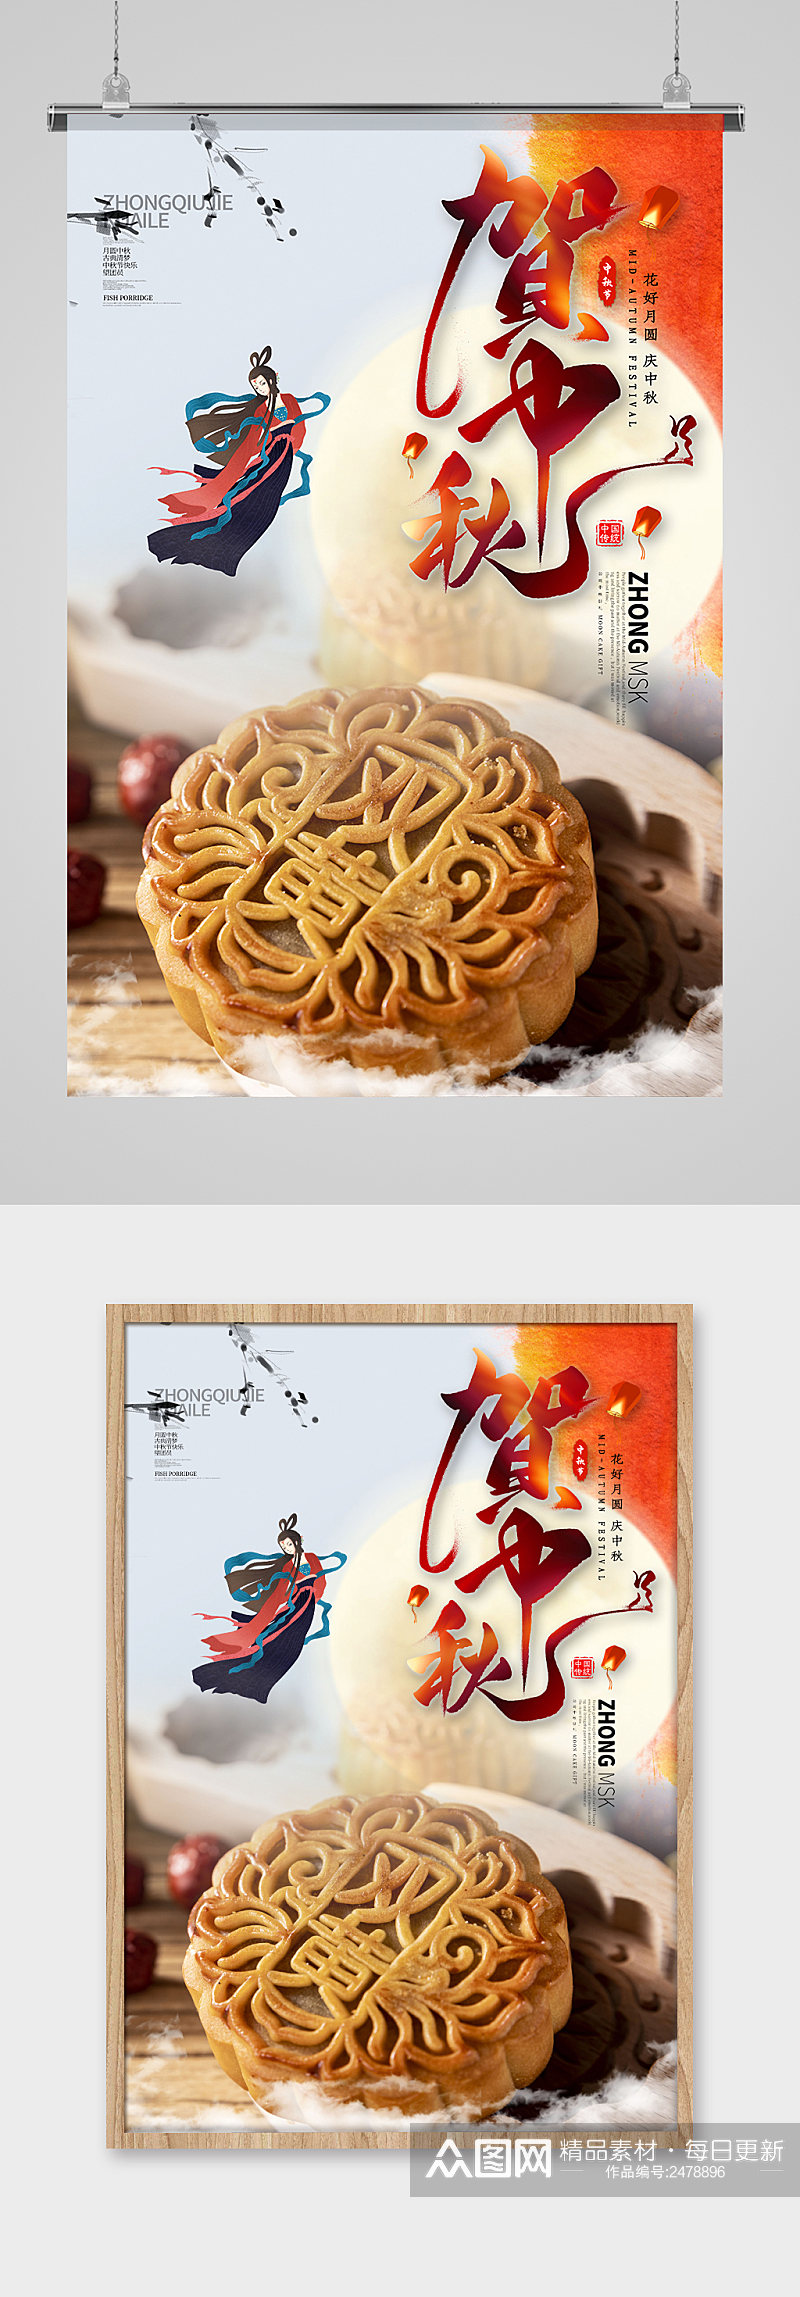 中秋节传统月饼宣传海报设计素材素材